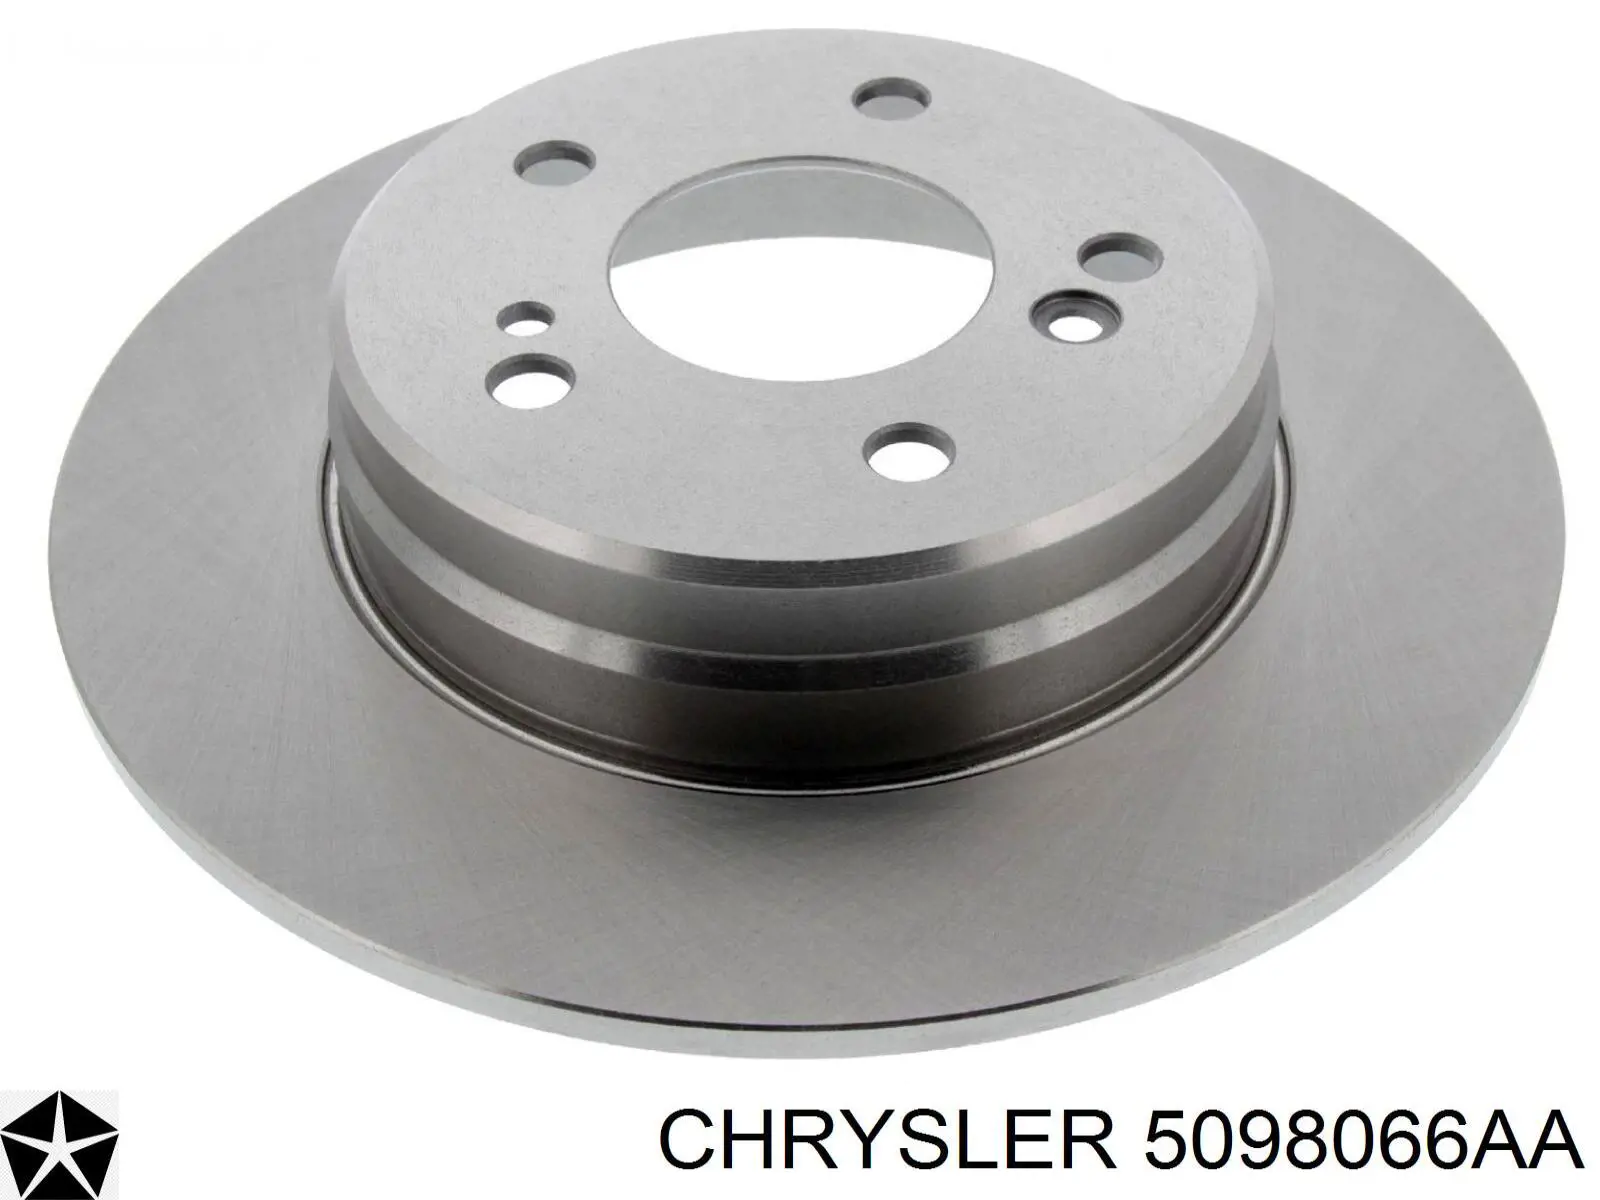 5098066AA Chrysler disco de freno trasero